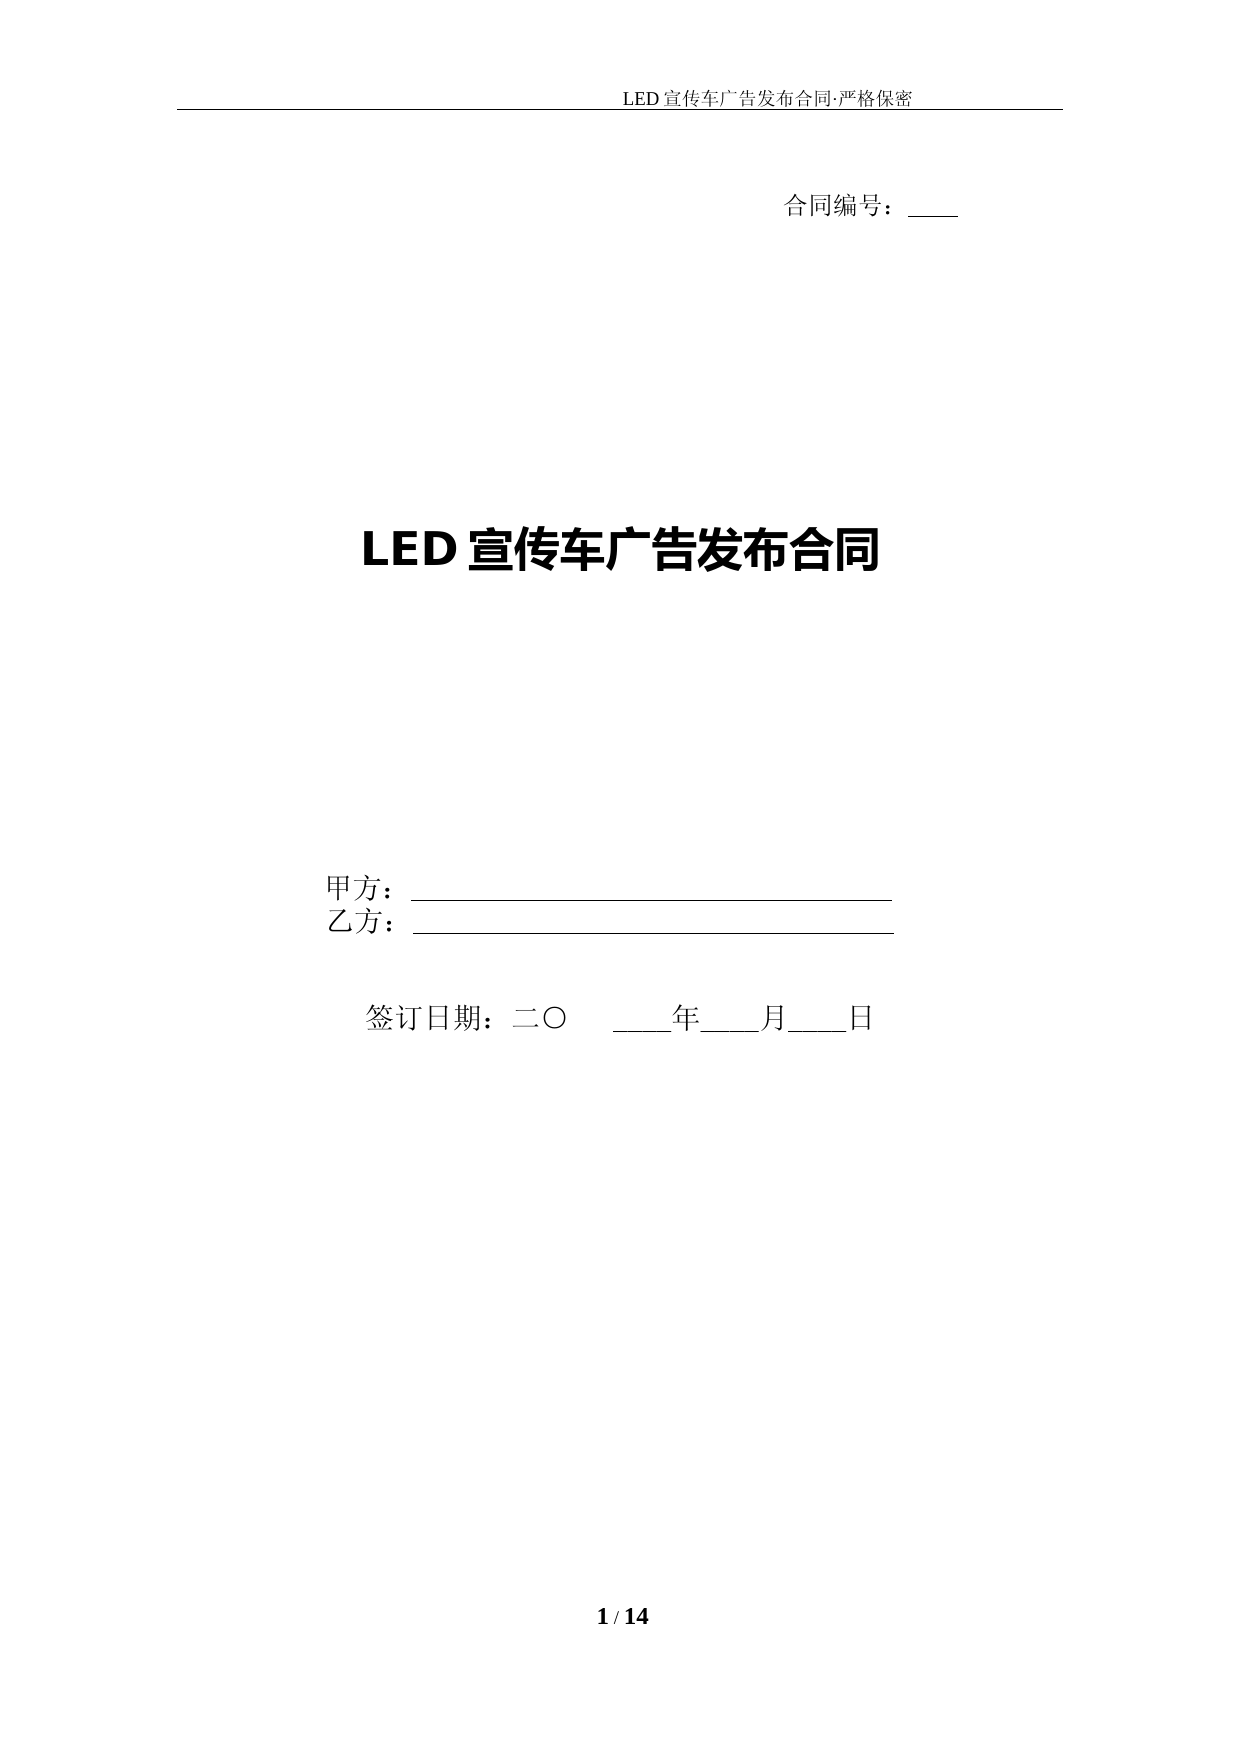 1-LED宣传车广告发布合同